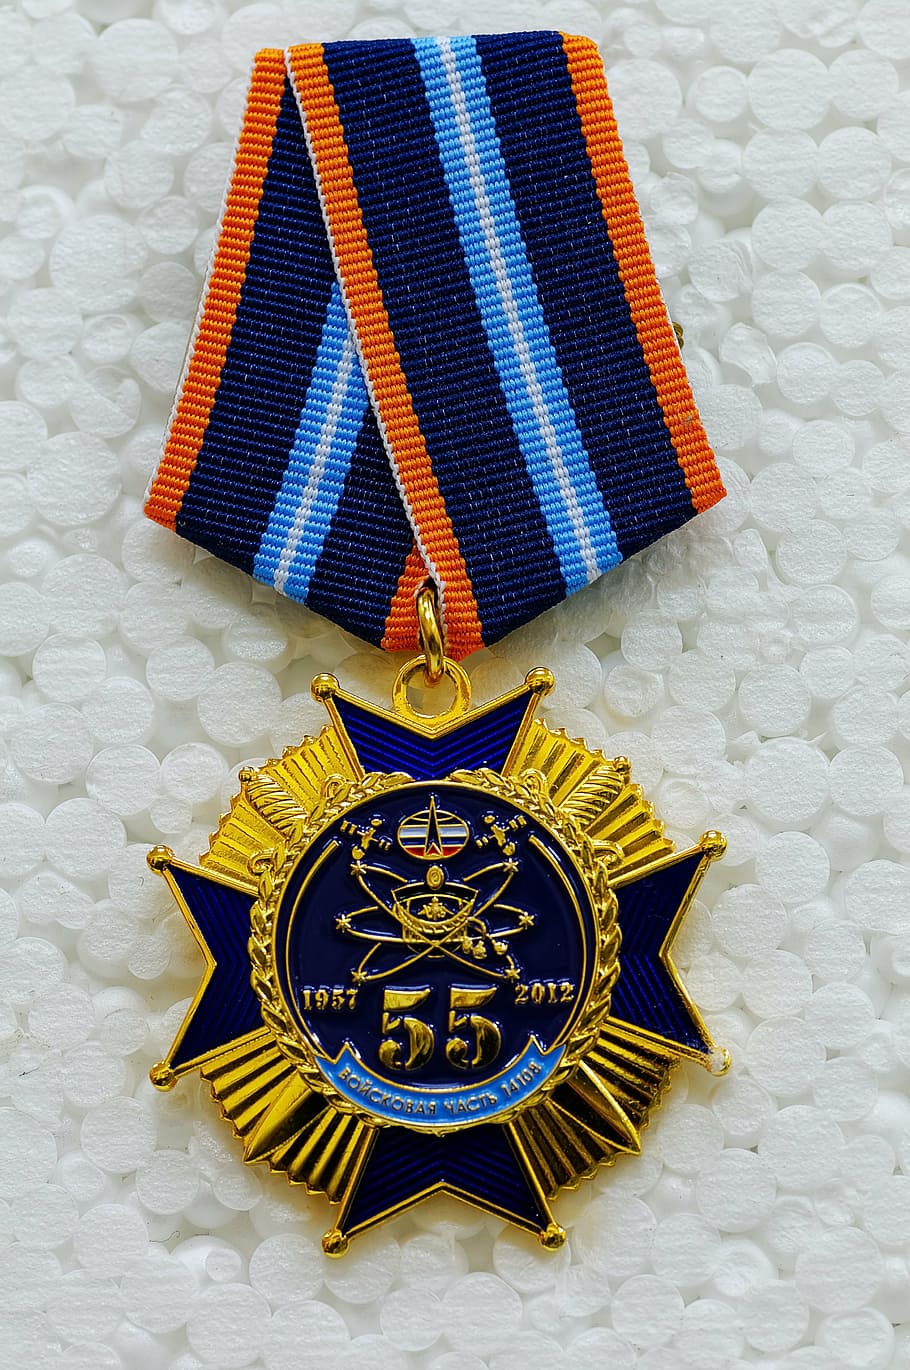 medalha dourada, medalha, medalha comemorativa, medalha de jubileu, forças espaciais, rússia, prêmio, parede - característica da construção, ninguém, azul